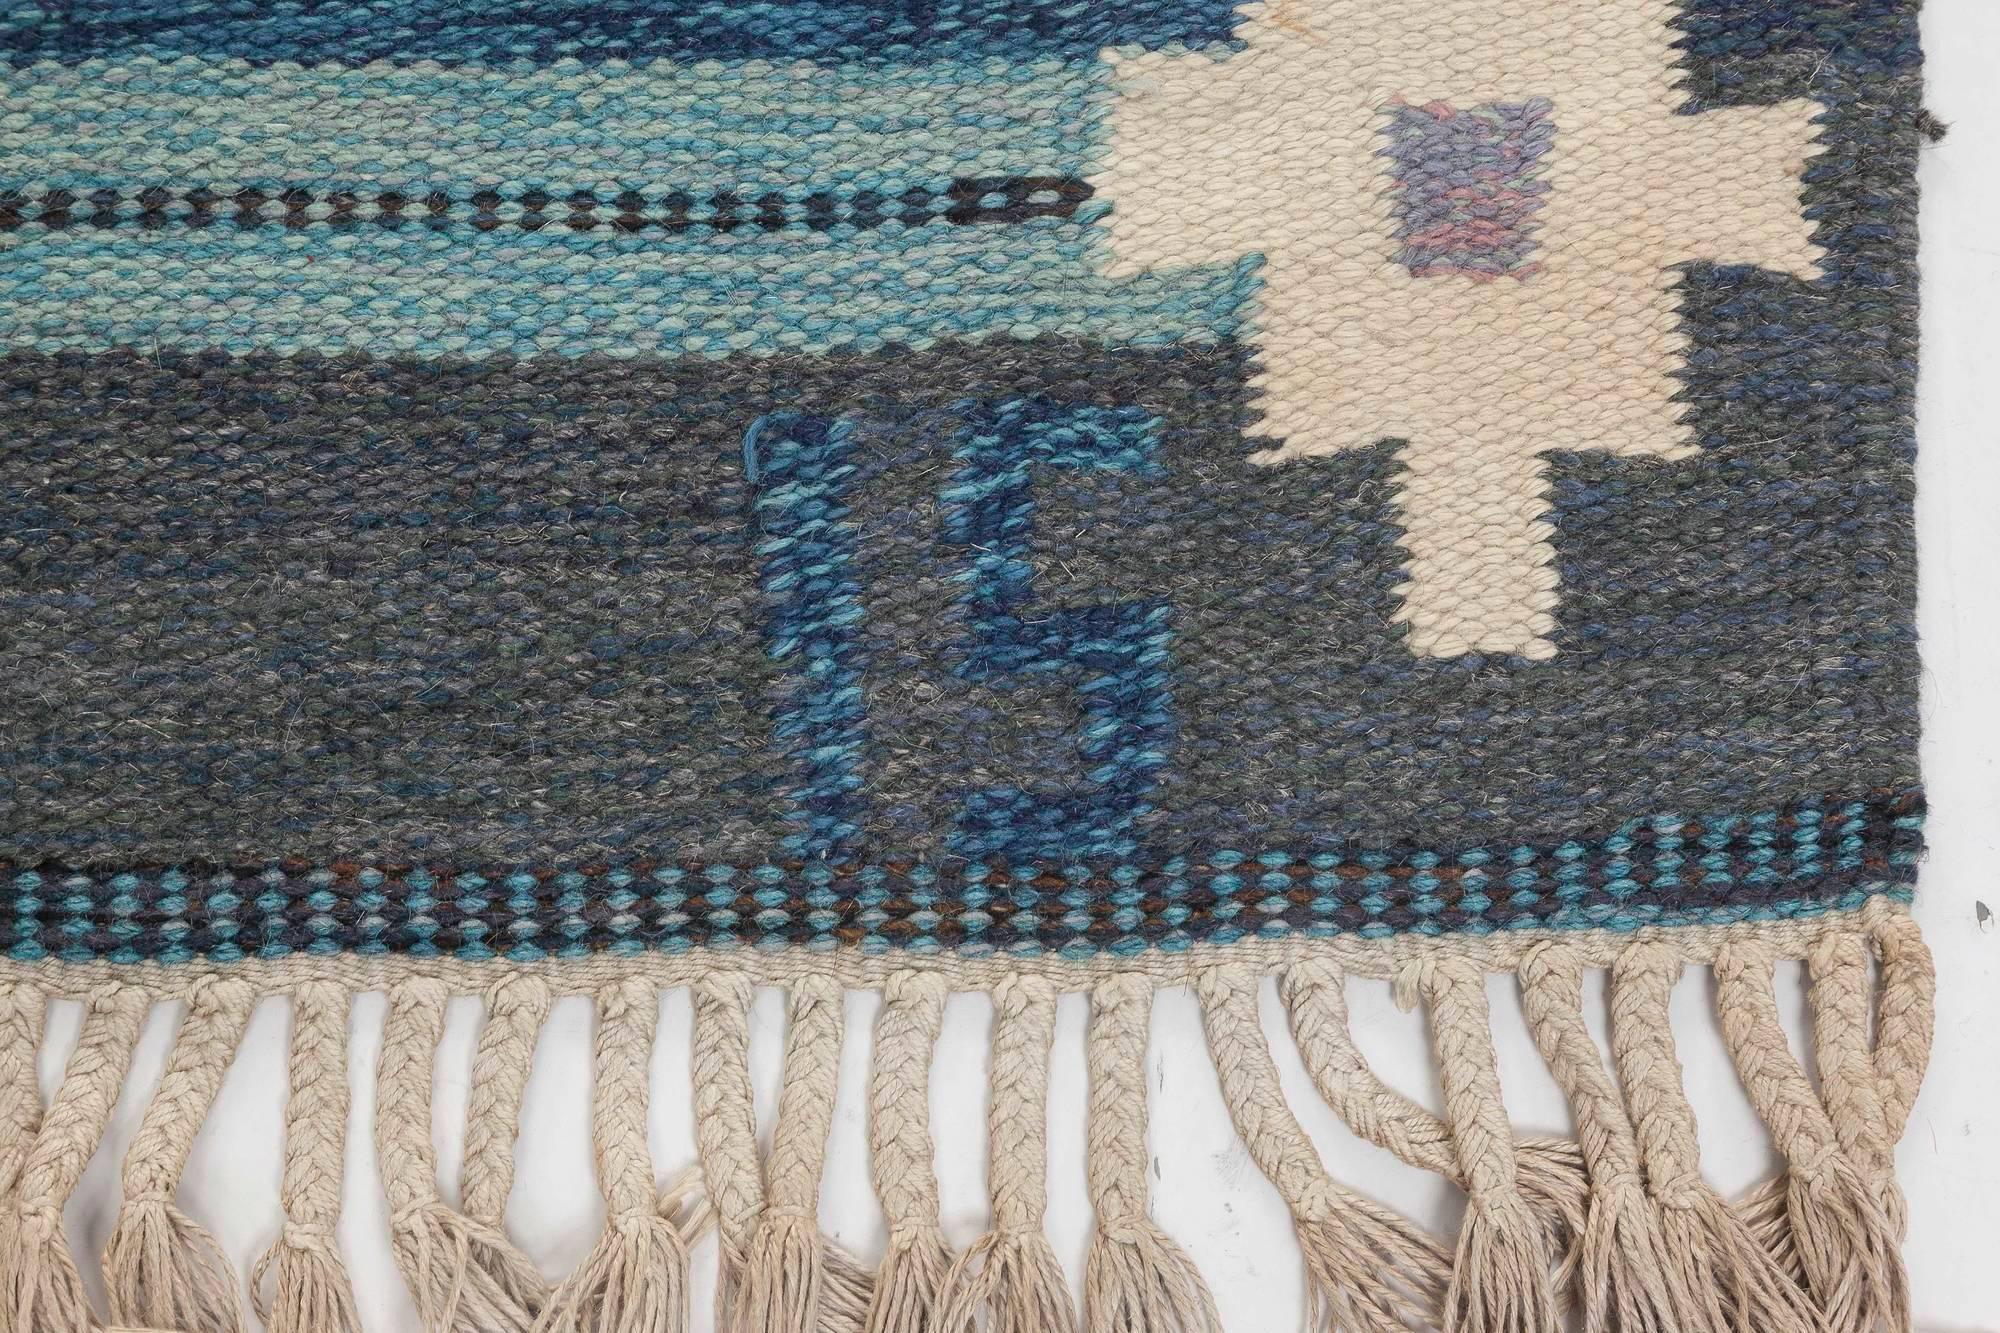 20th Century Midcentury Swedish Blue Flat-weave Rug by Ingegerd Silow at Doris Leslie Blau